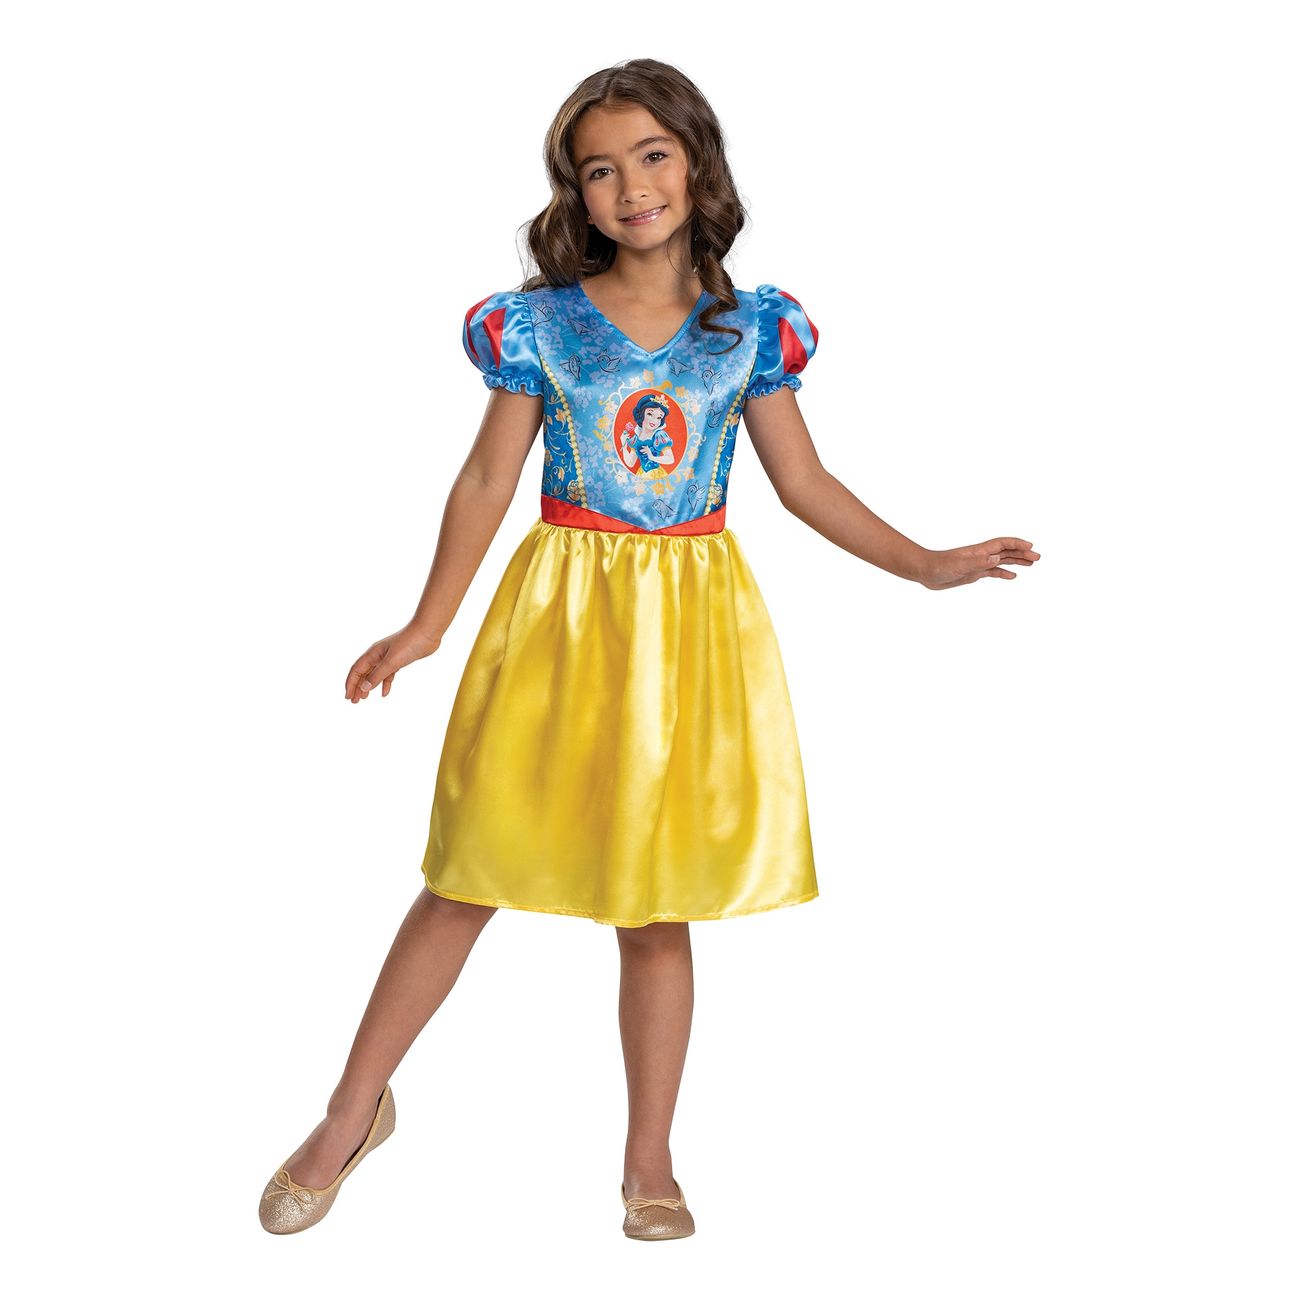 Snehvide børnekostume budget - Disney prinsesse kostume til børn